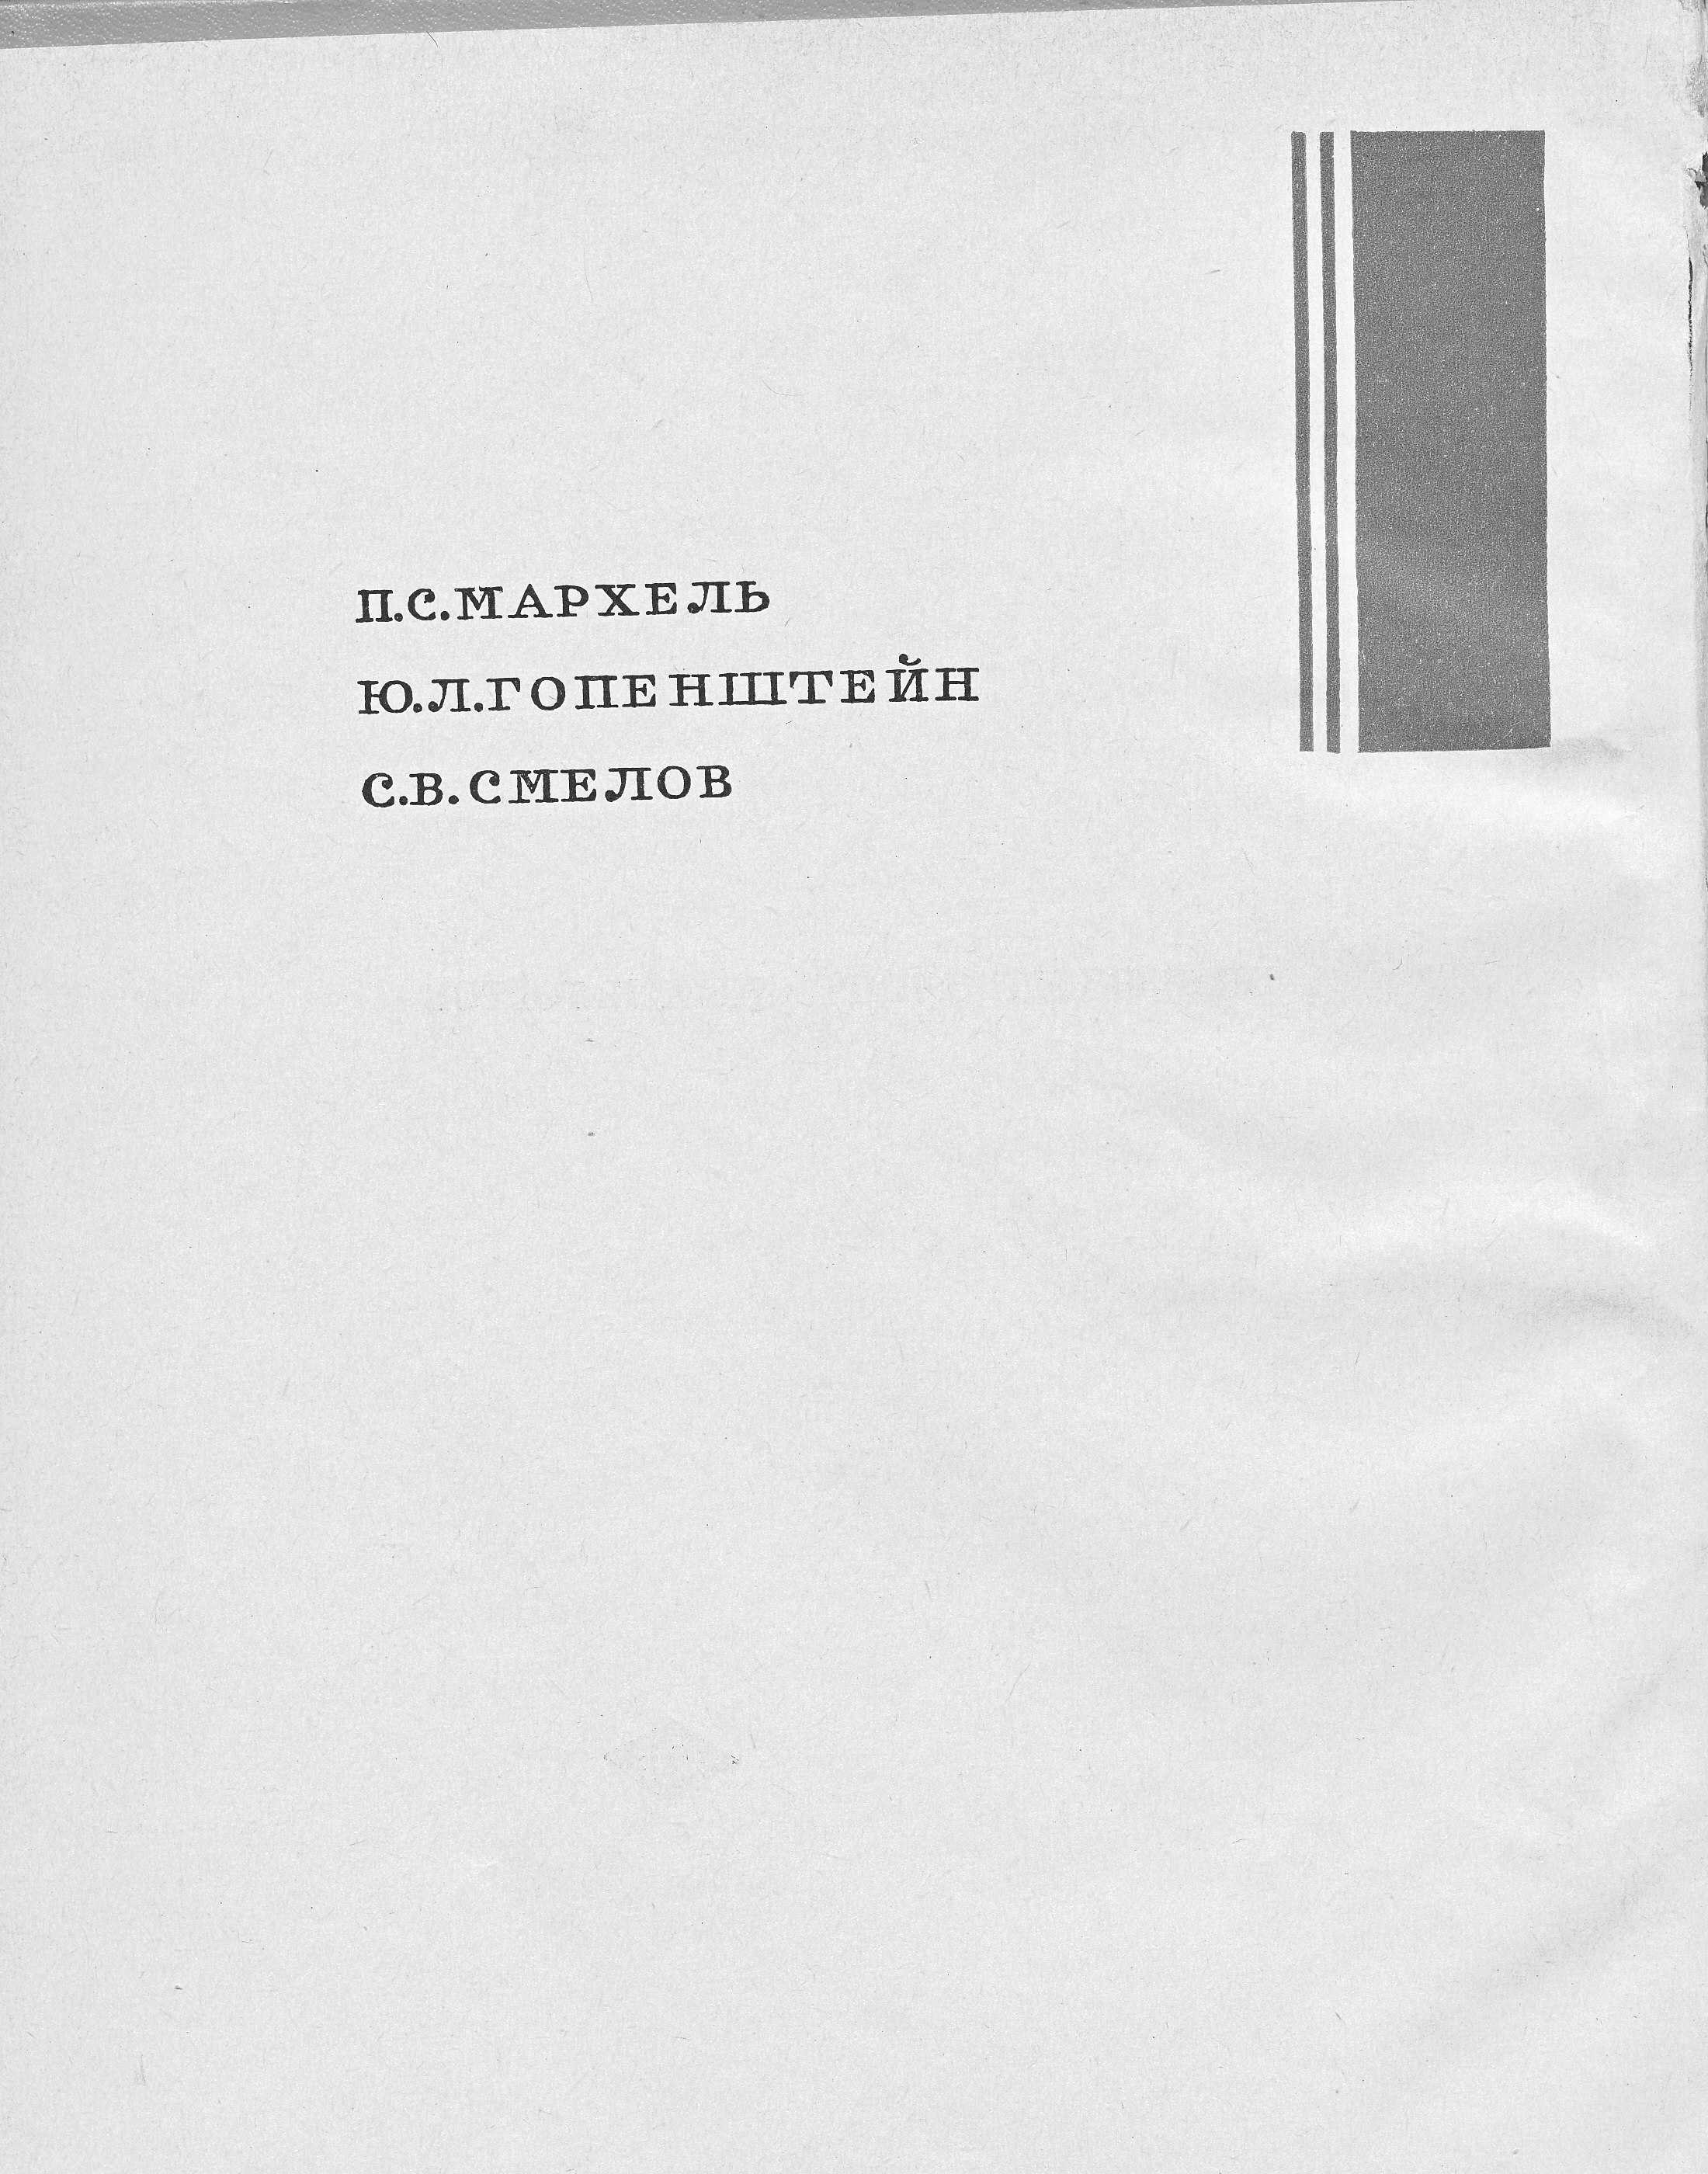 Производство пирожных и тортов П.С. Мархель, Ю.Л. Гопенштейн, С.В. Смелов 1974 г. страница 2